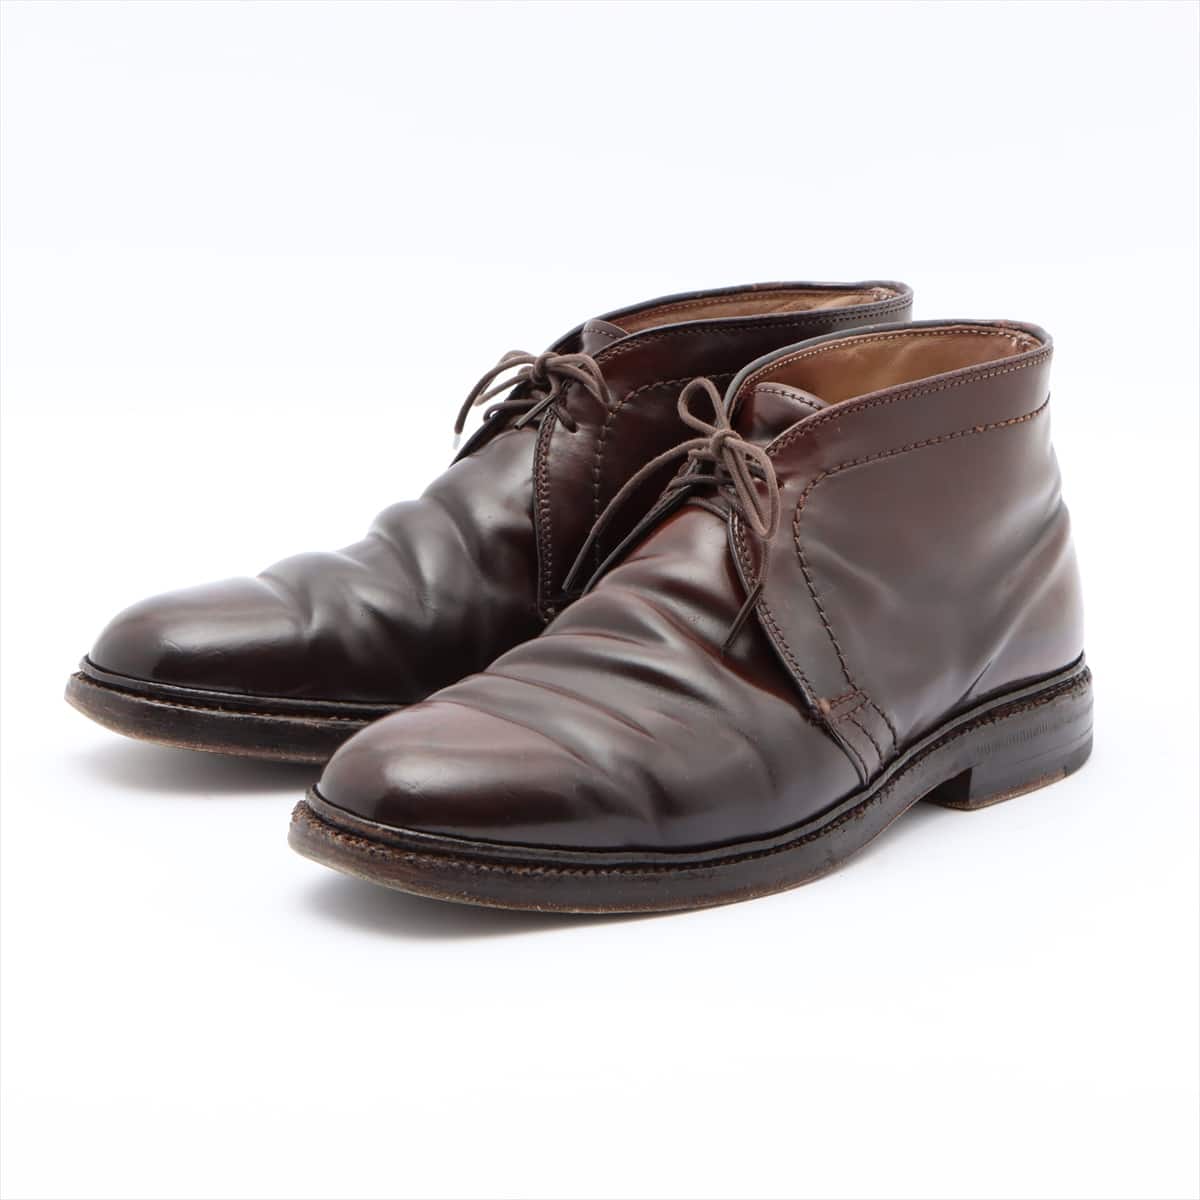 Alden Cordovan Chukka Boots 6.5 Men's Brown 1339